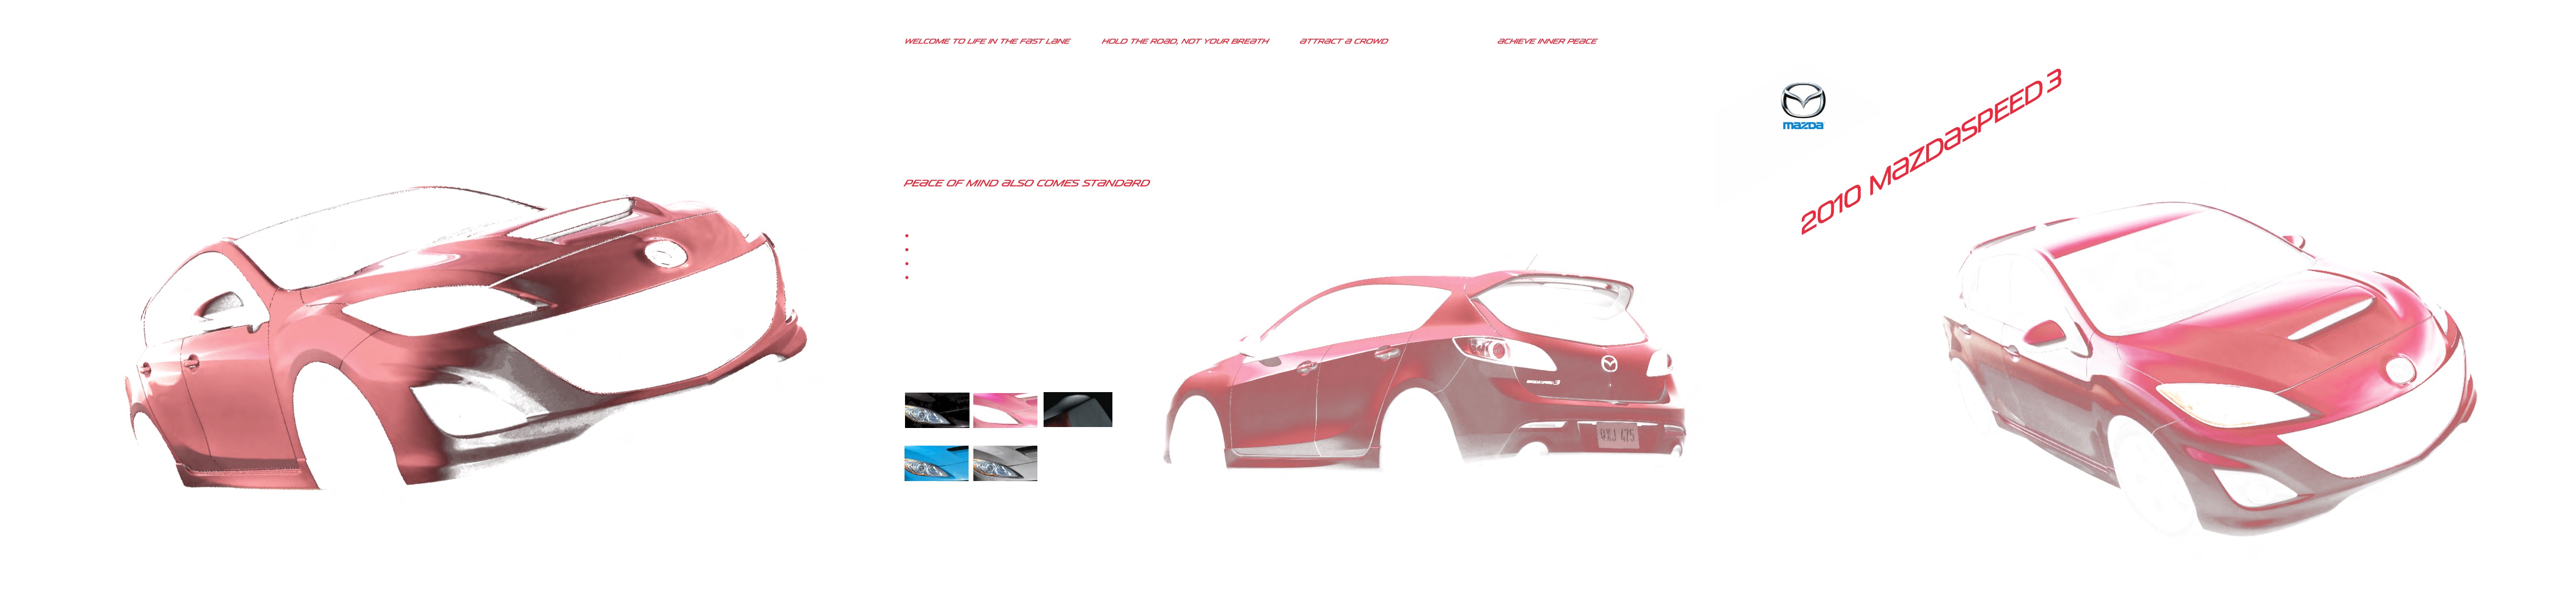 2010 Mazda 3 Brochure